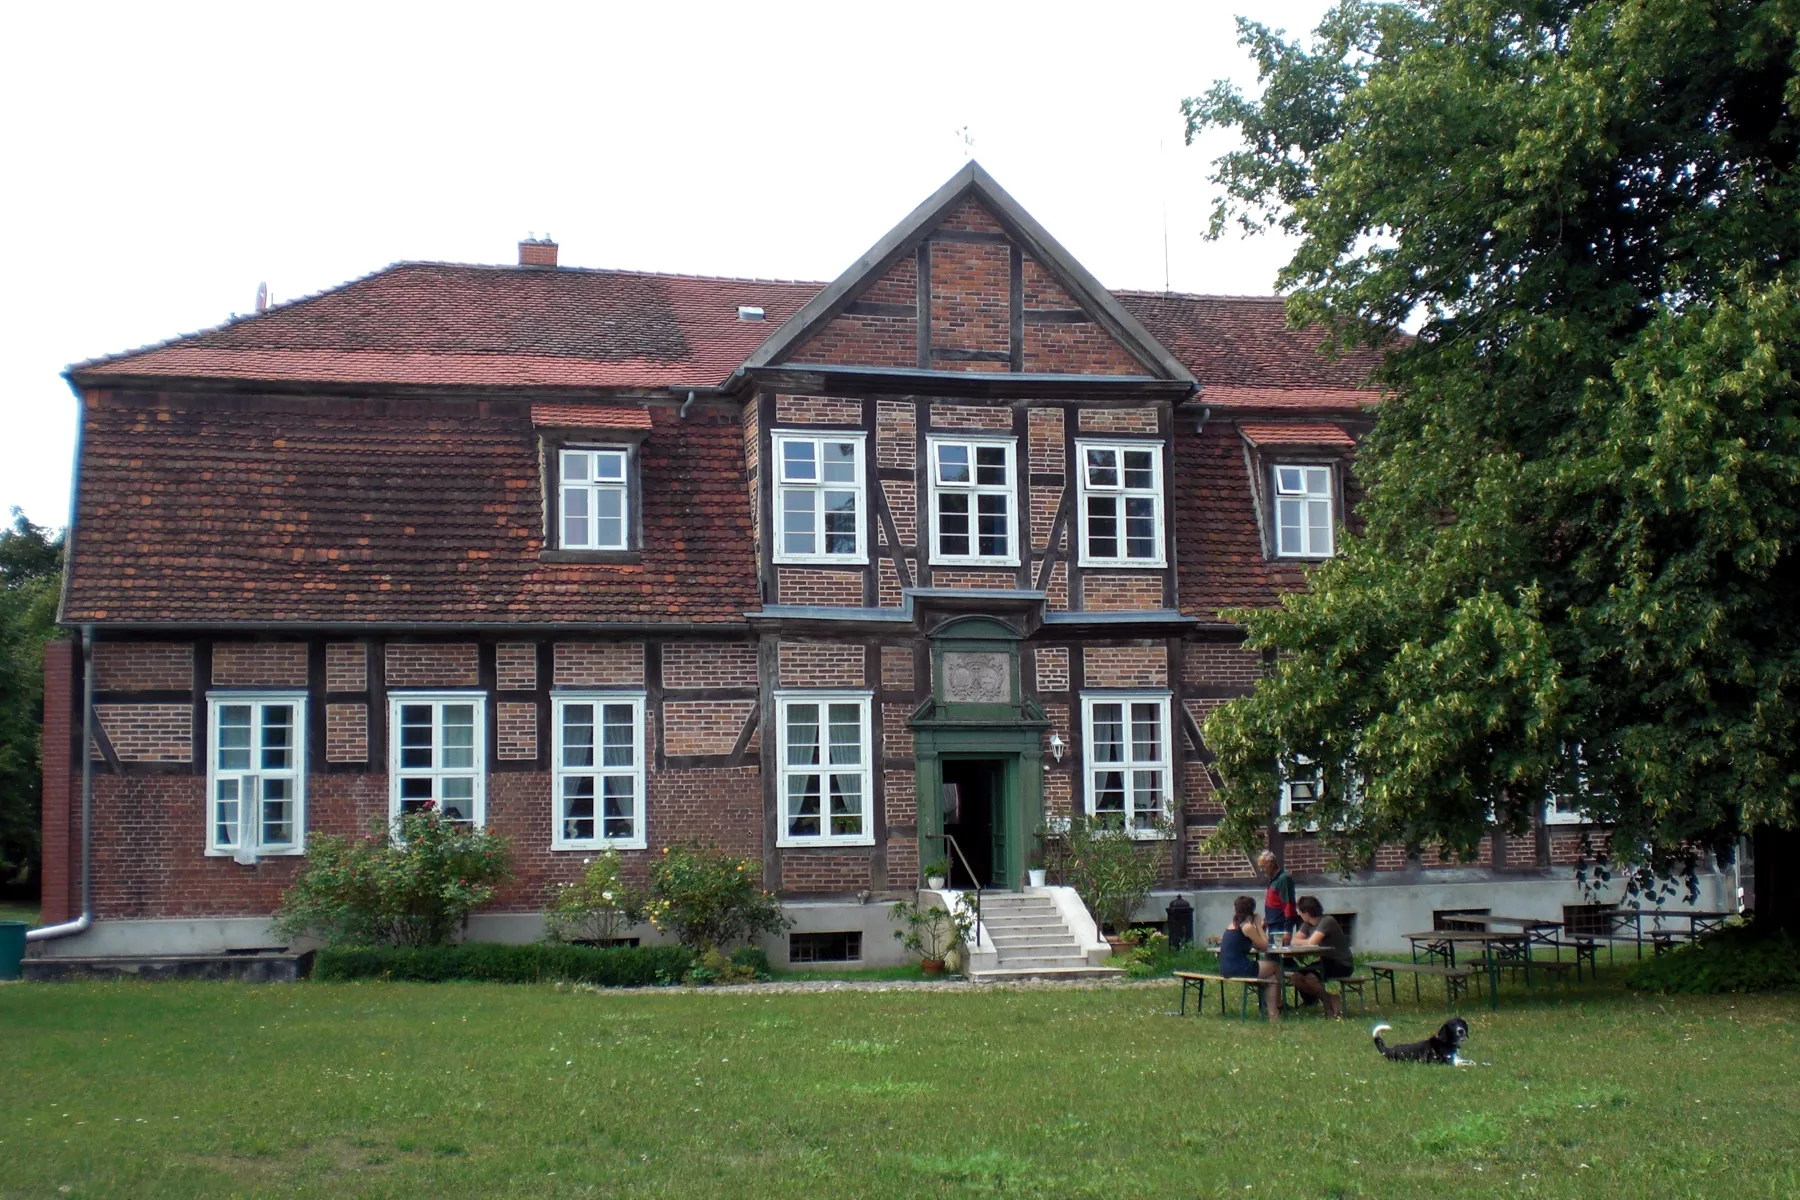 Photo showing: (Altes) Herrenhaus Schwiessel (Mecklenburg-Vorpommern)
Datum: 13.08.2010
Urheber: onnola (Flickr-User)
Quelle: https://www.flickr.com/photos/30845644@N04/5982118856/